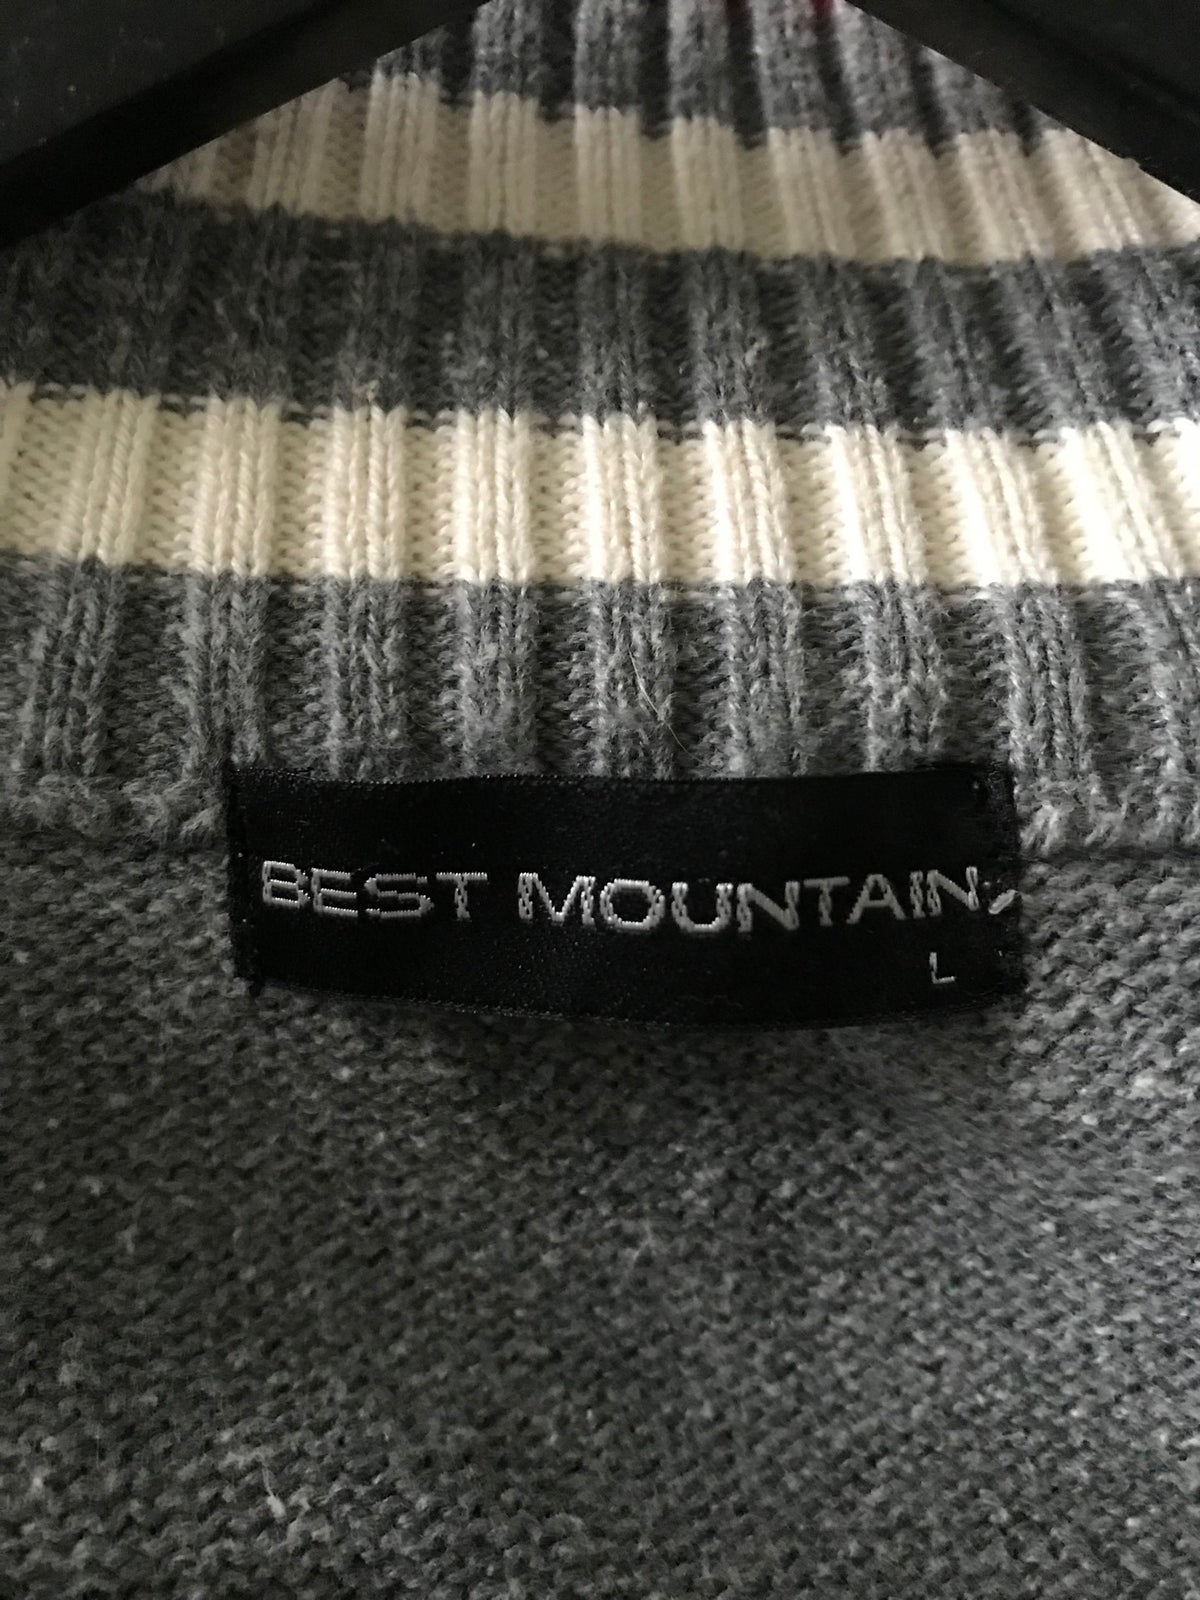 Anden trøje, Best mountain, str. L